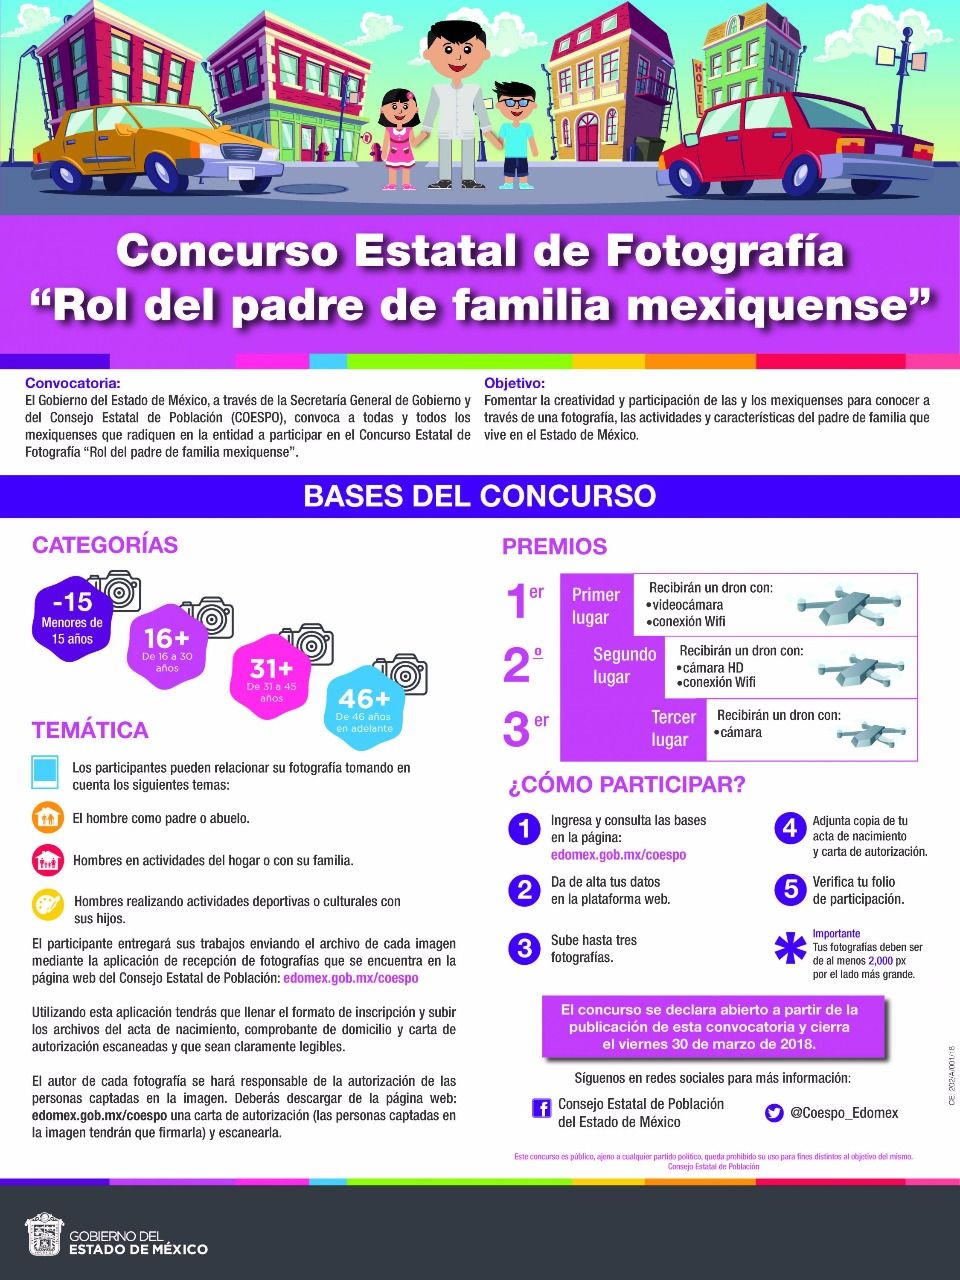 COESPO invita al concurso estatal de fotografía ’rol del padre de familia mexiquense’